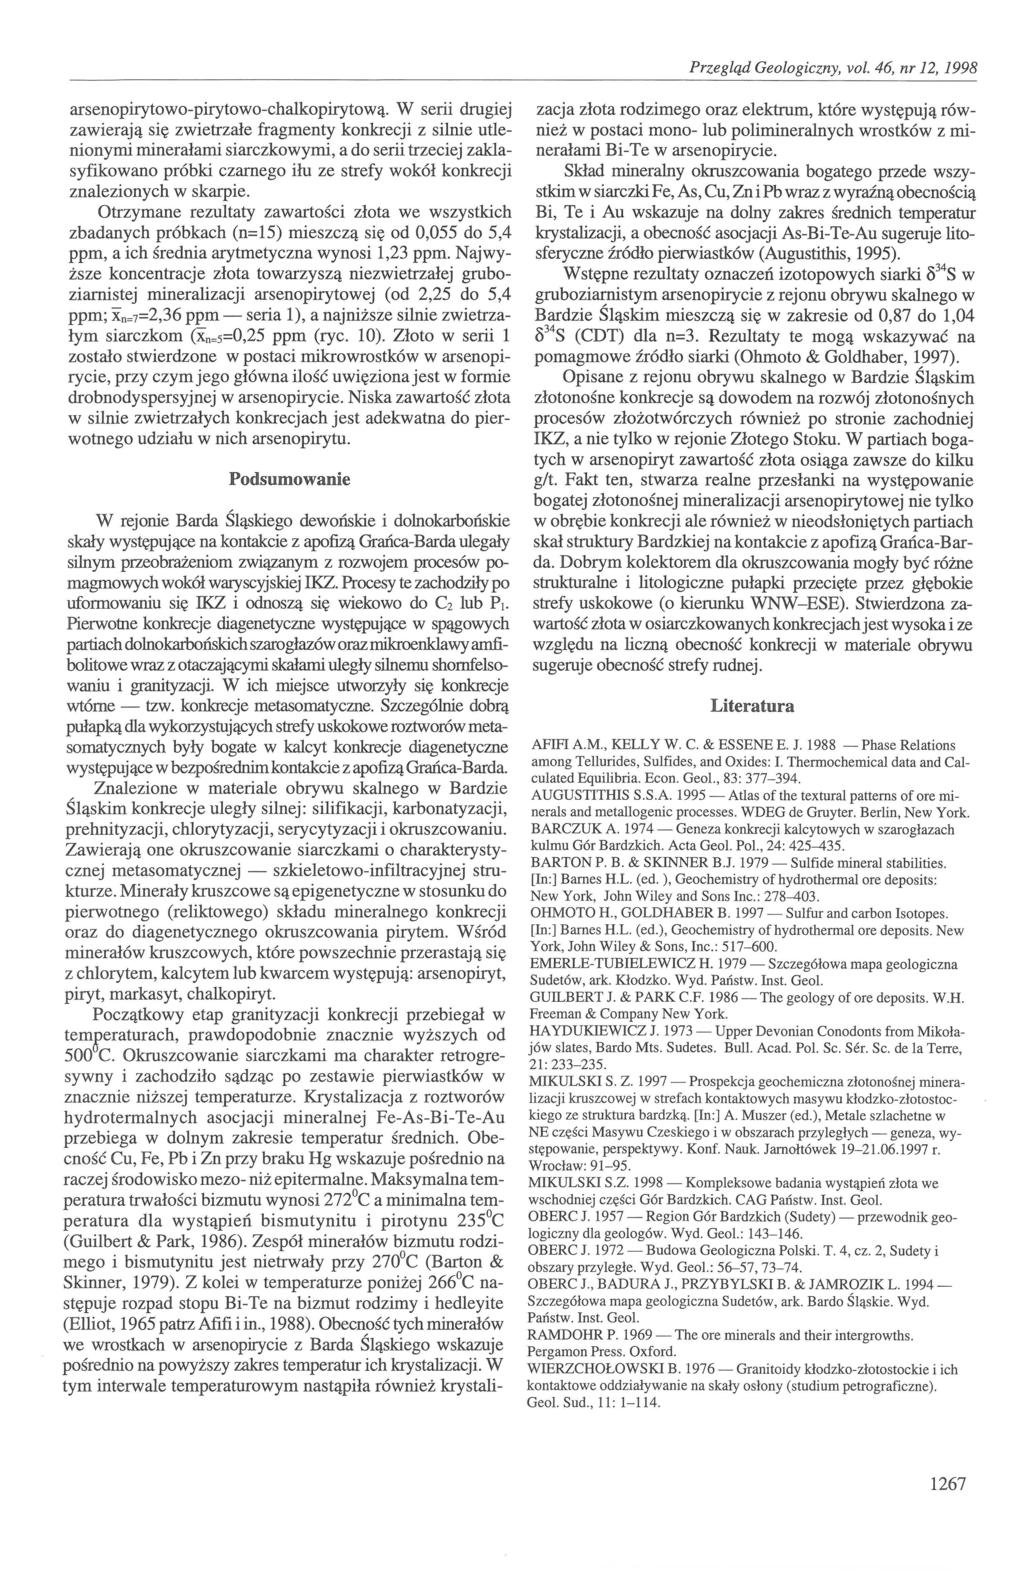 Geologiczny, vot. 46, nr 12, 1998 arsenopirytowopirytowochalkopirytową.